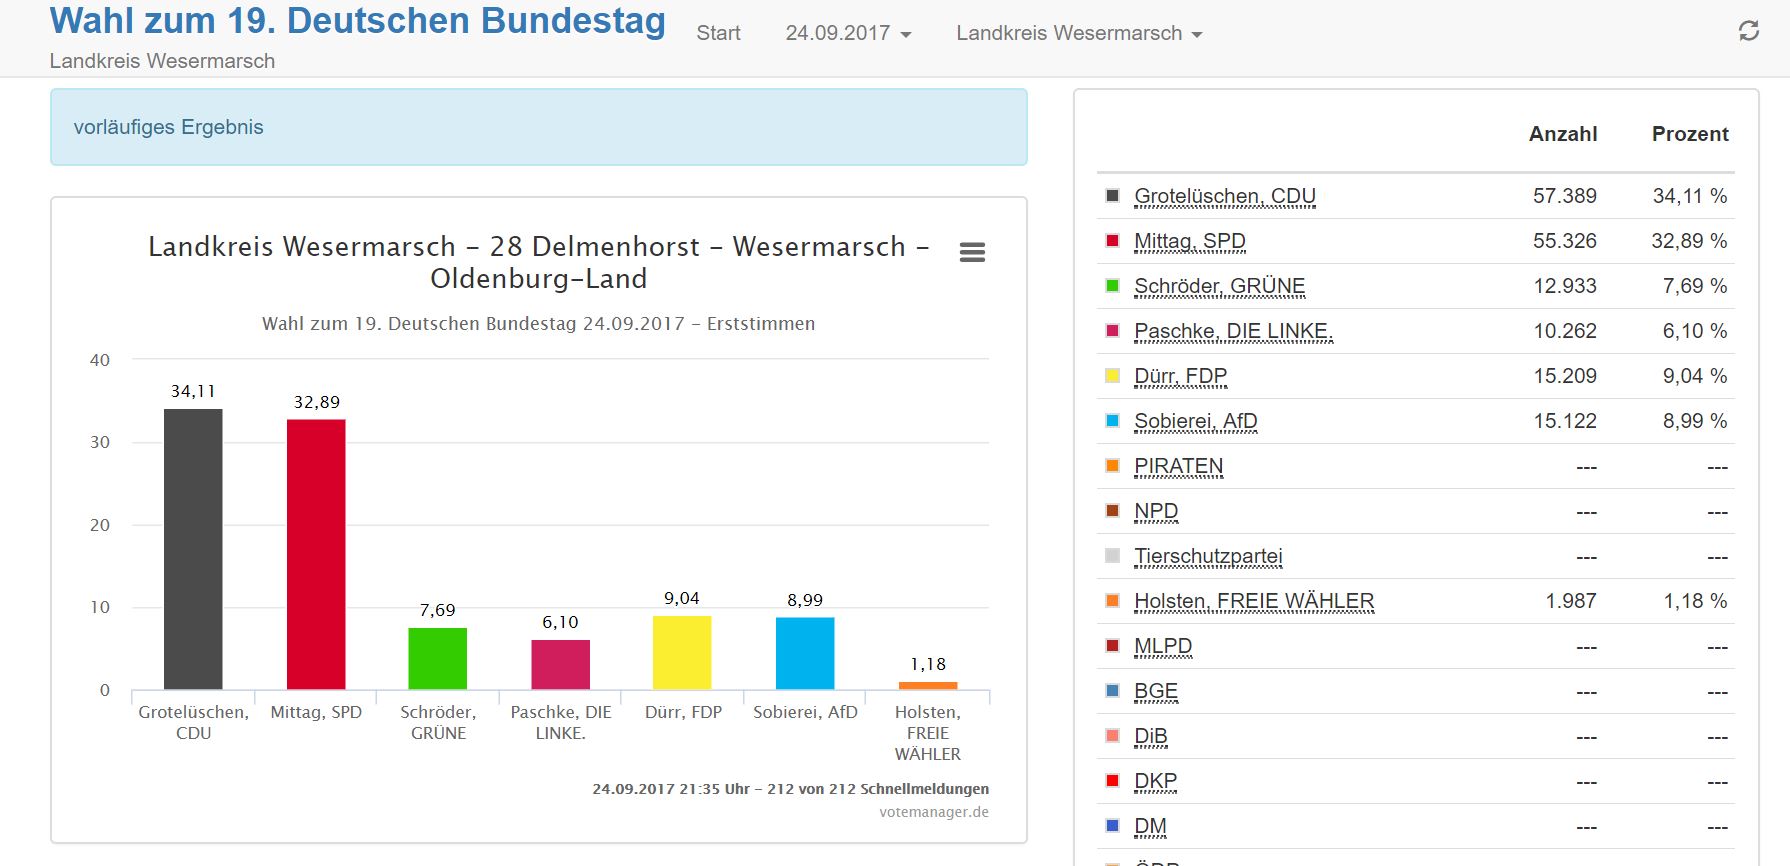 Wahl zum Deutschen Bundestag 24.09.2017 - Erstsimmen